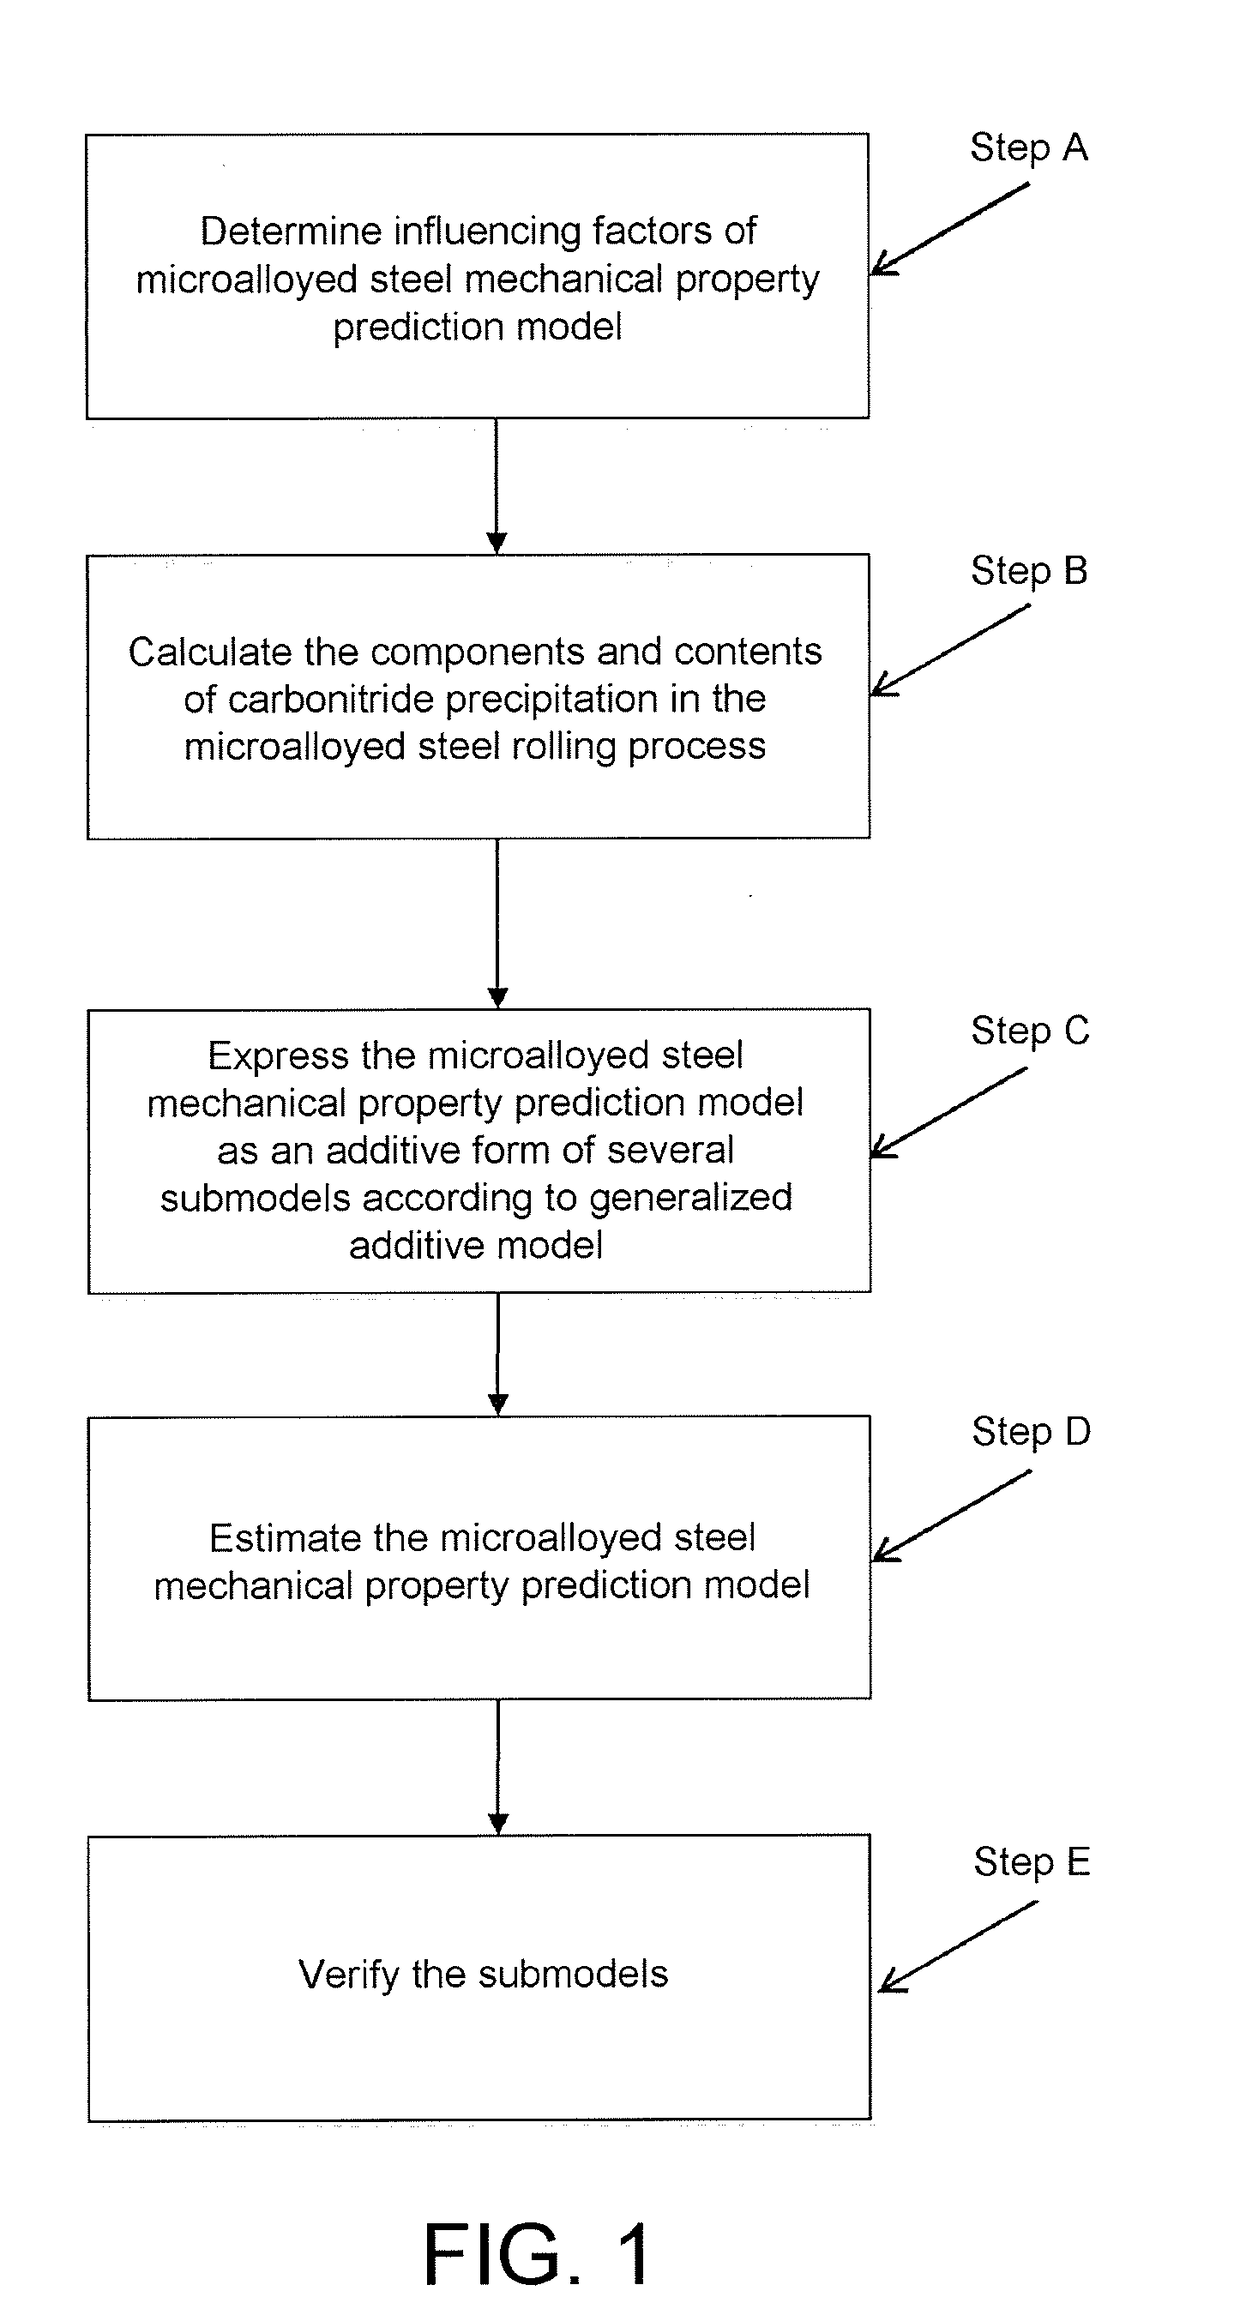 Microalloyed steel mechanical property prediction method based on globally additive model